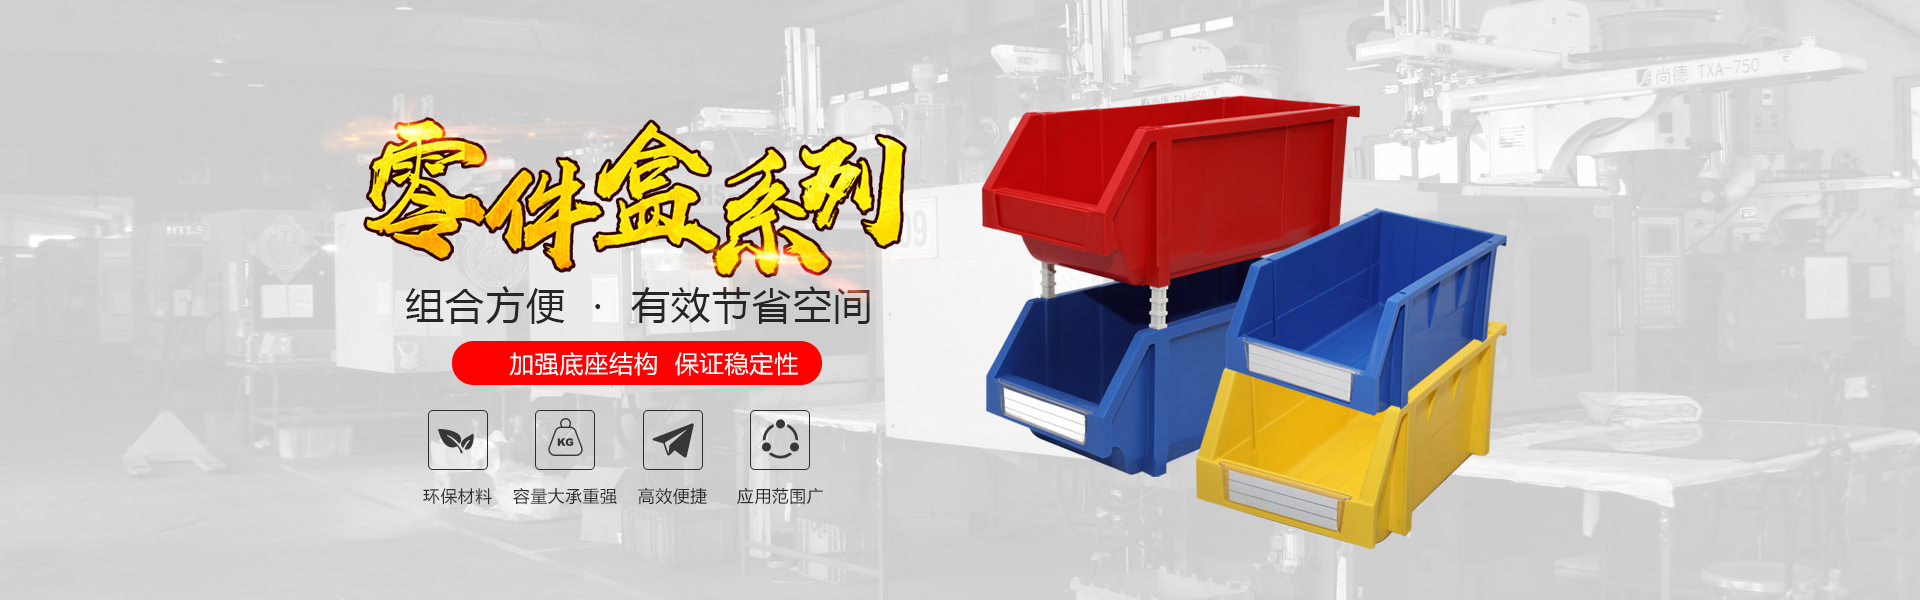 青岛j9官网app自动化主营零件盒,塑料零件盒,塑料托盘等产品!